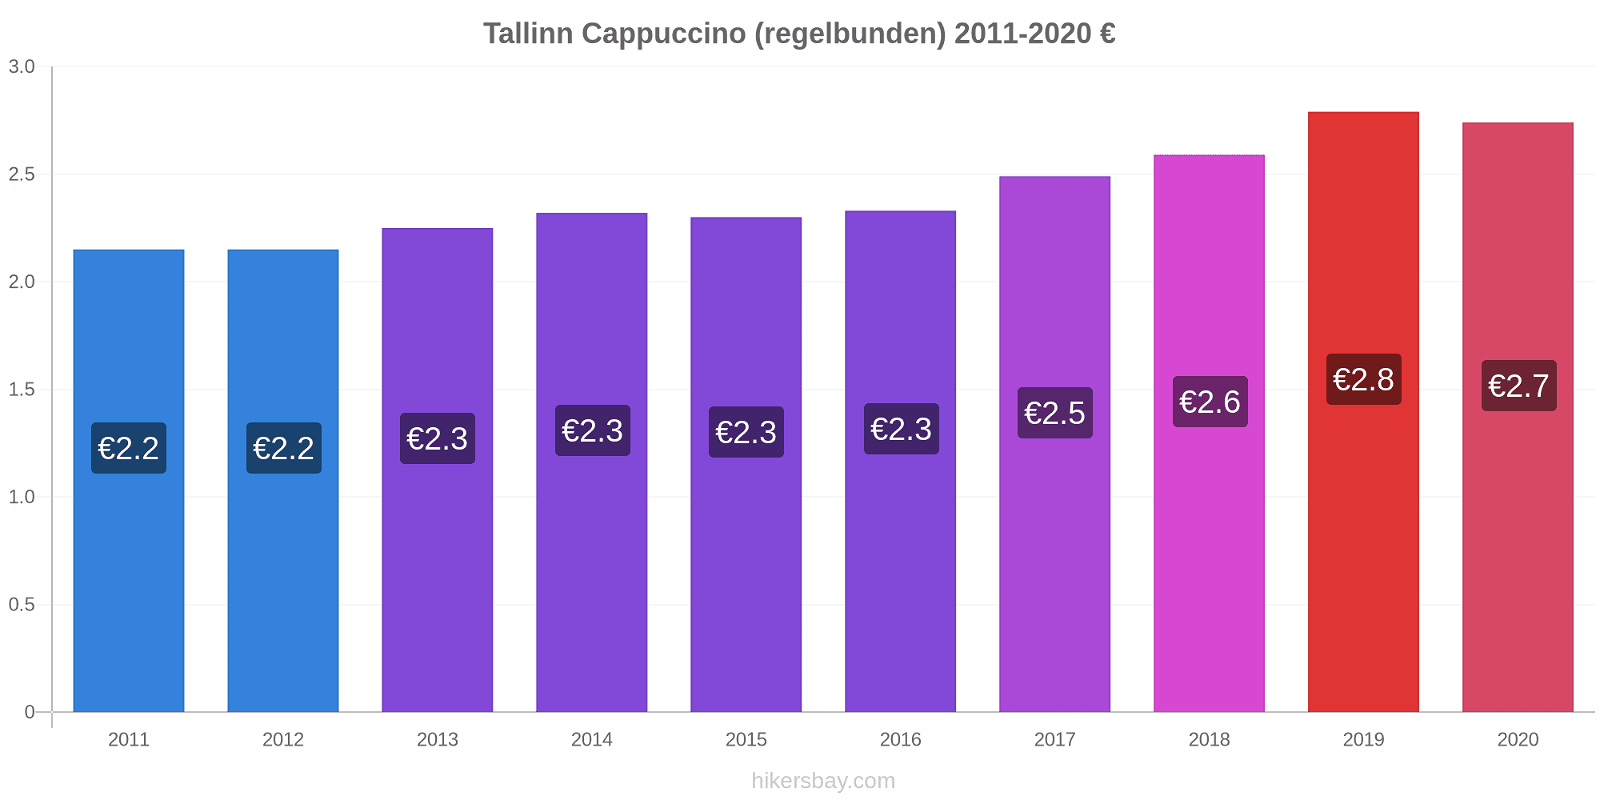 Tallinn prisförändringar Cappuccino (regelbunden) hikersbay.com